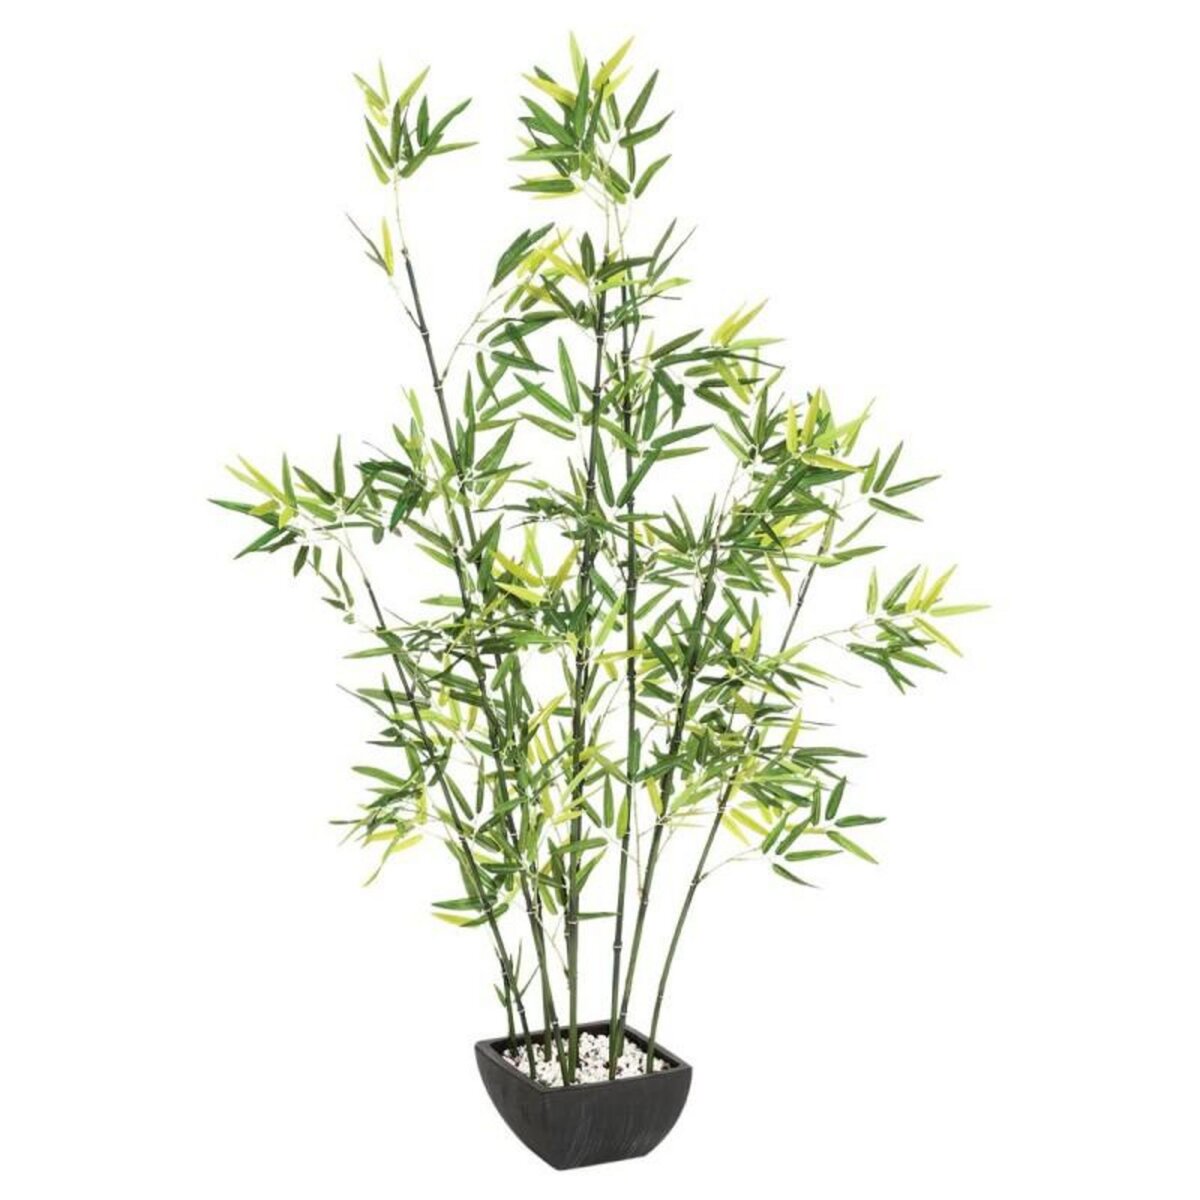  Plante Artificielle  Bambou  122cm Vert